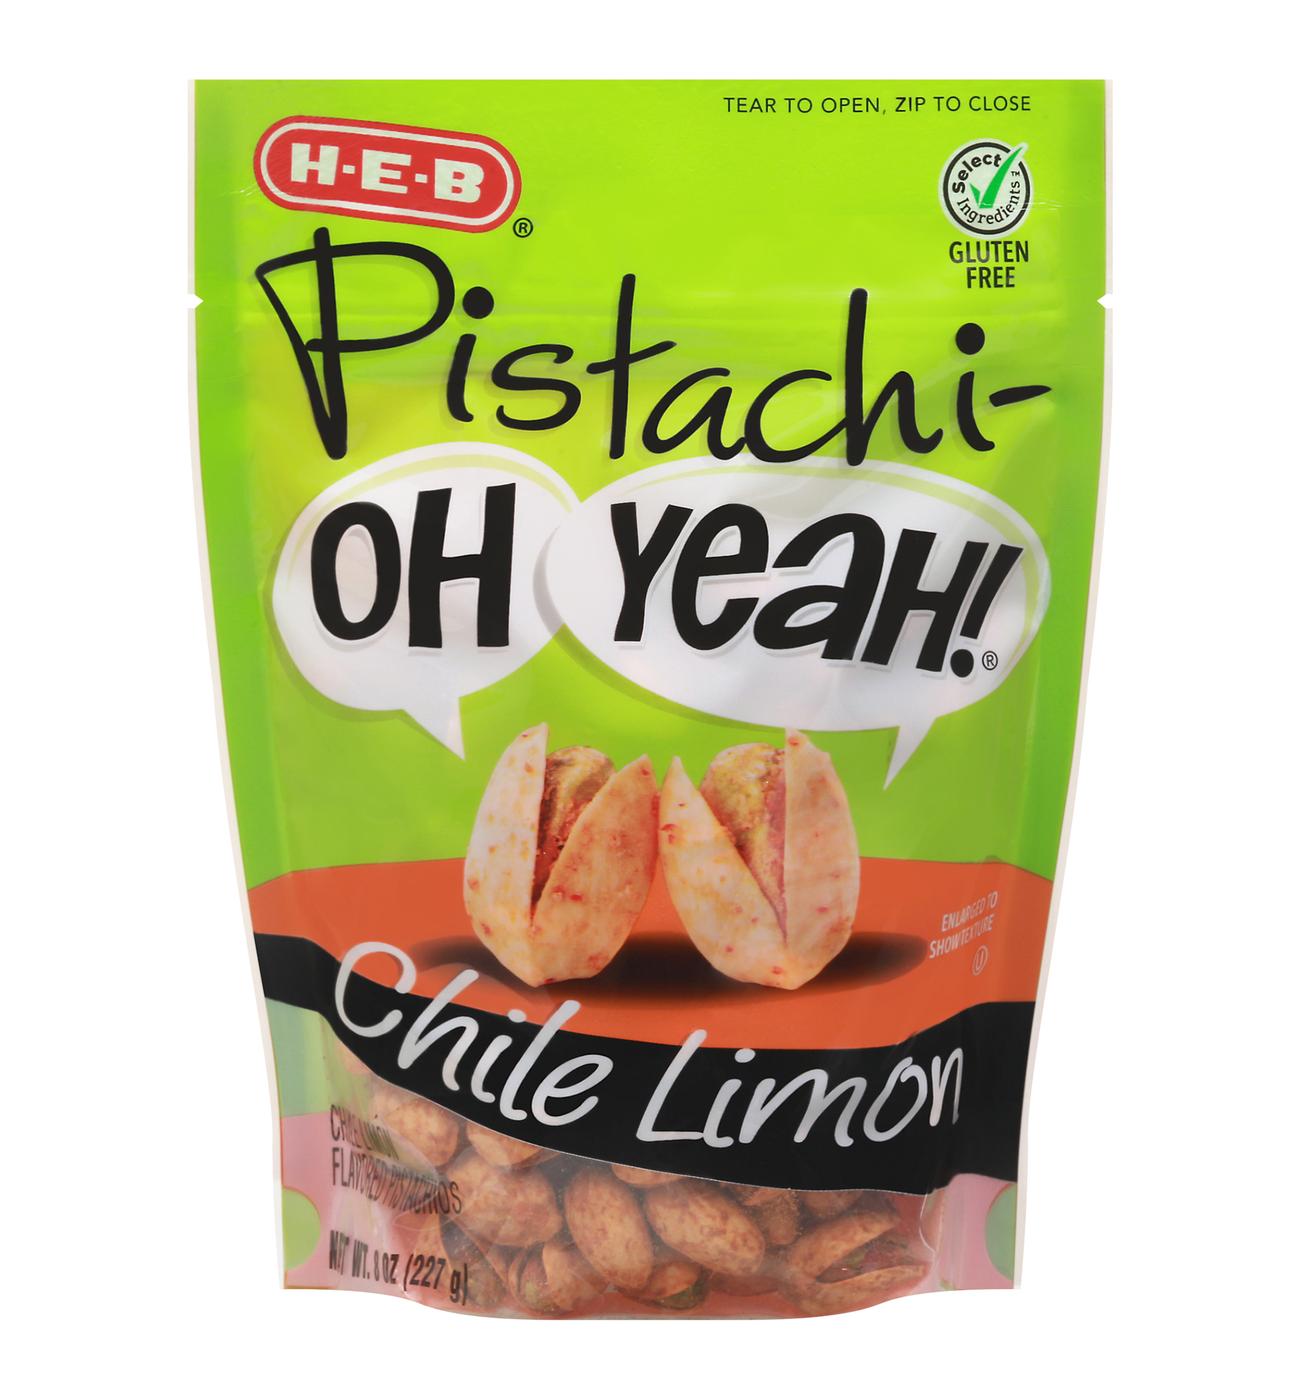 H-E-B Pistachi-OH YEAH! Pistachios - Chile Limón; image 1 of 2